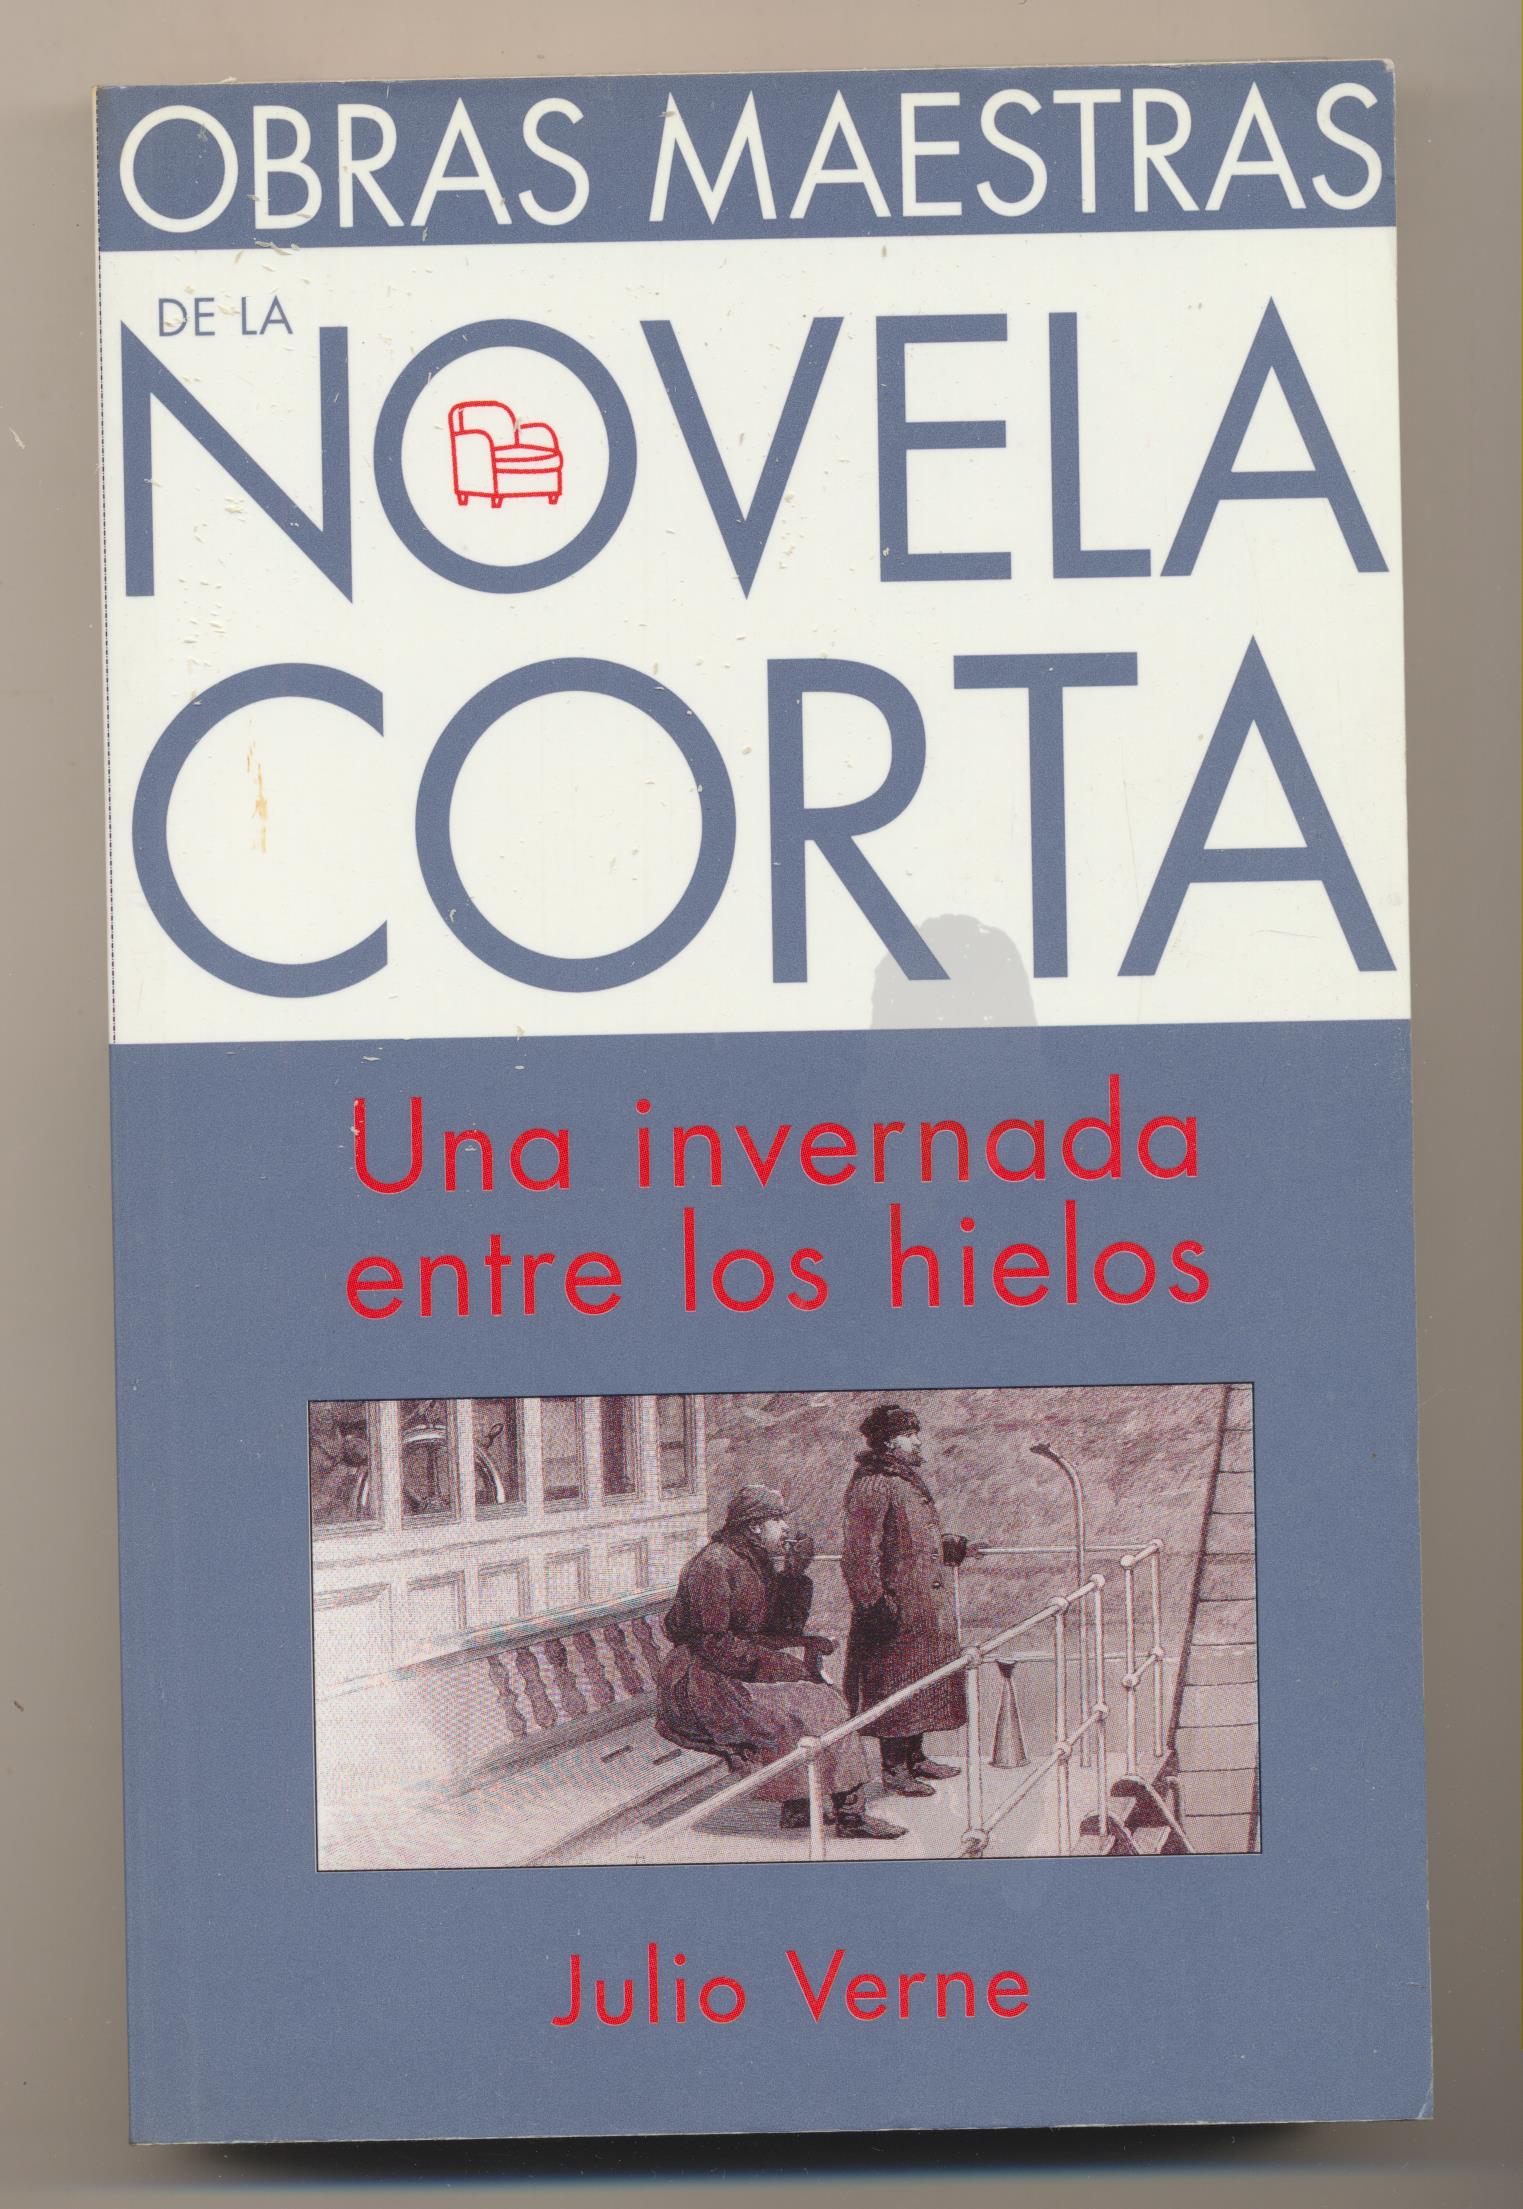 Obras Mestras de La Novela Corta. Julio Verne. Una Invernada entre los hielos. Suma de Letras 2001. SIN USAR